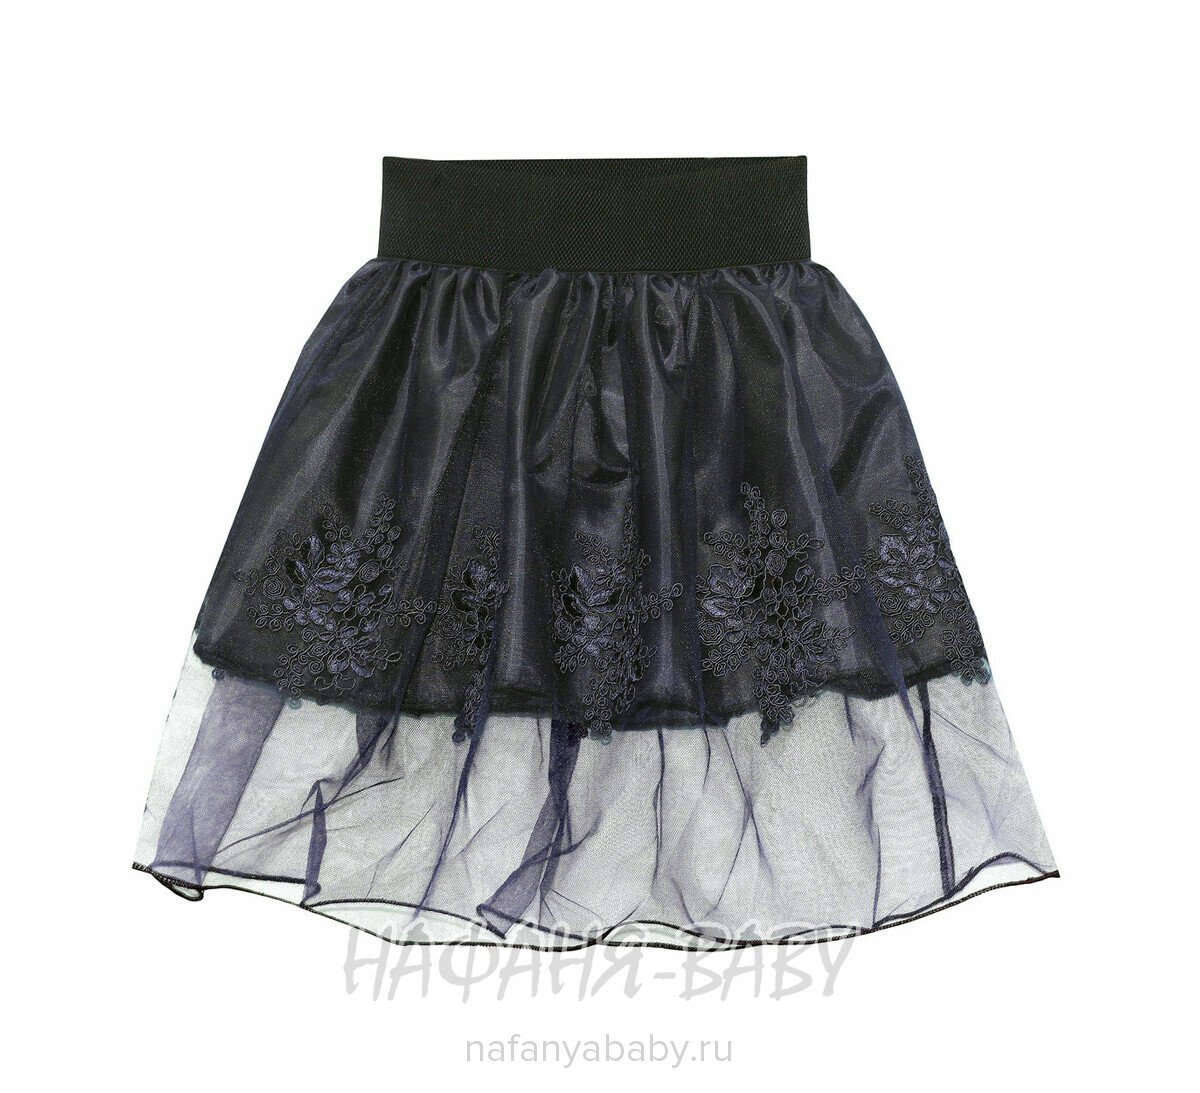 Детская юбка KGMART, купить в интернет магазине Нафаня. арт: 2234.